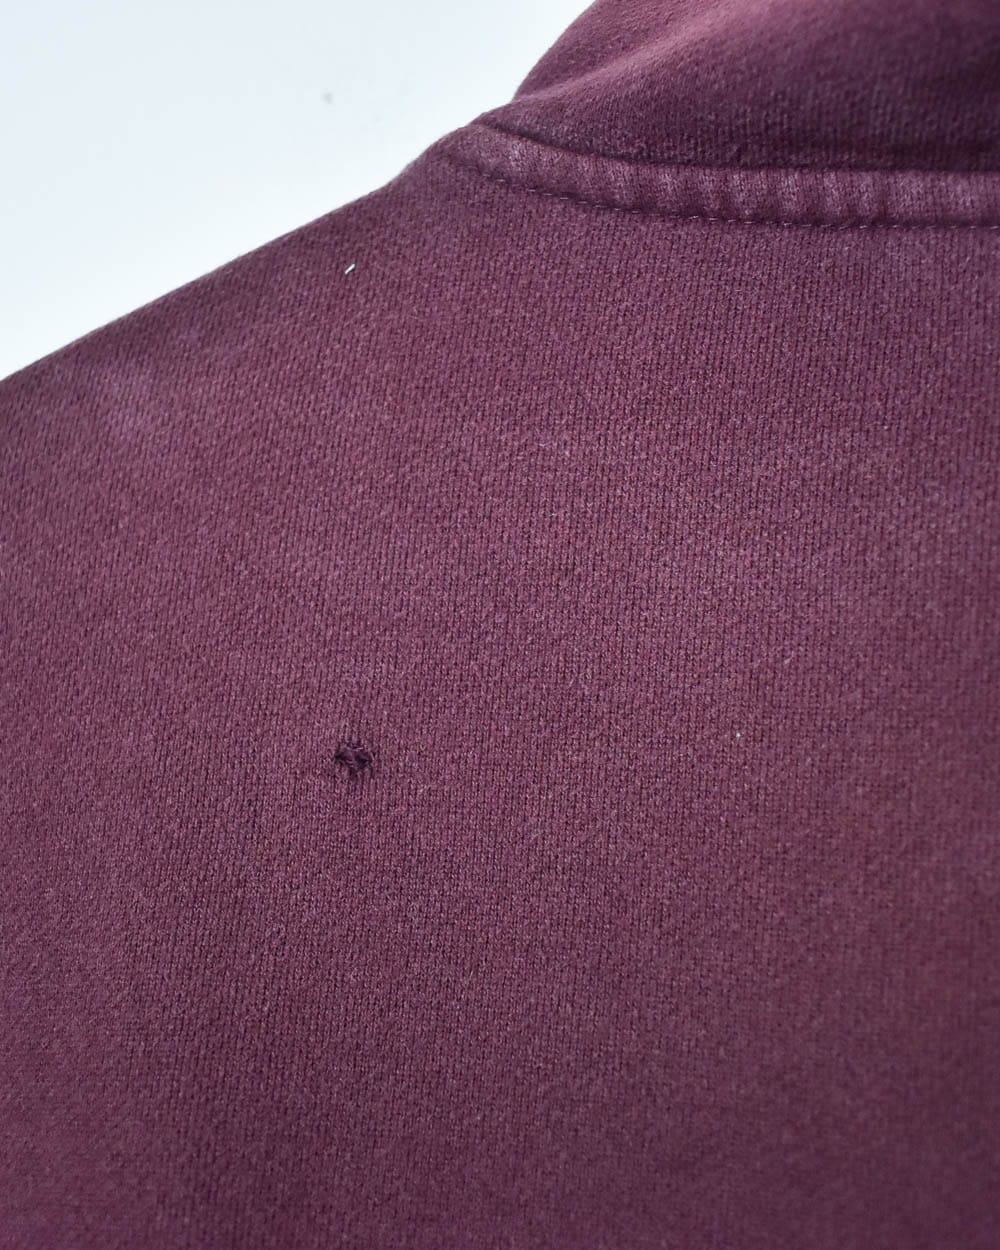 Maroon Fila 1/4 Zip Sweatshirt - Small